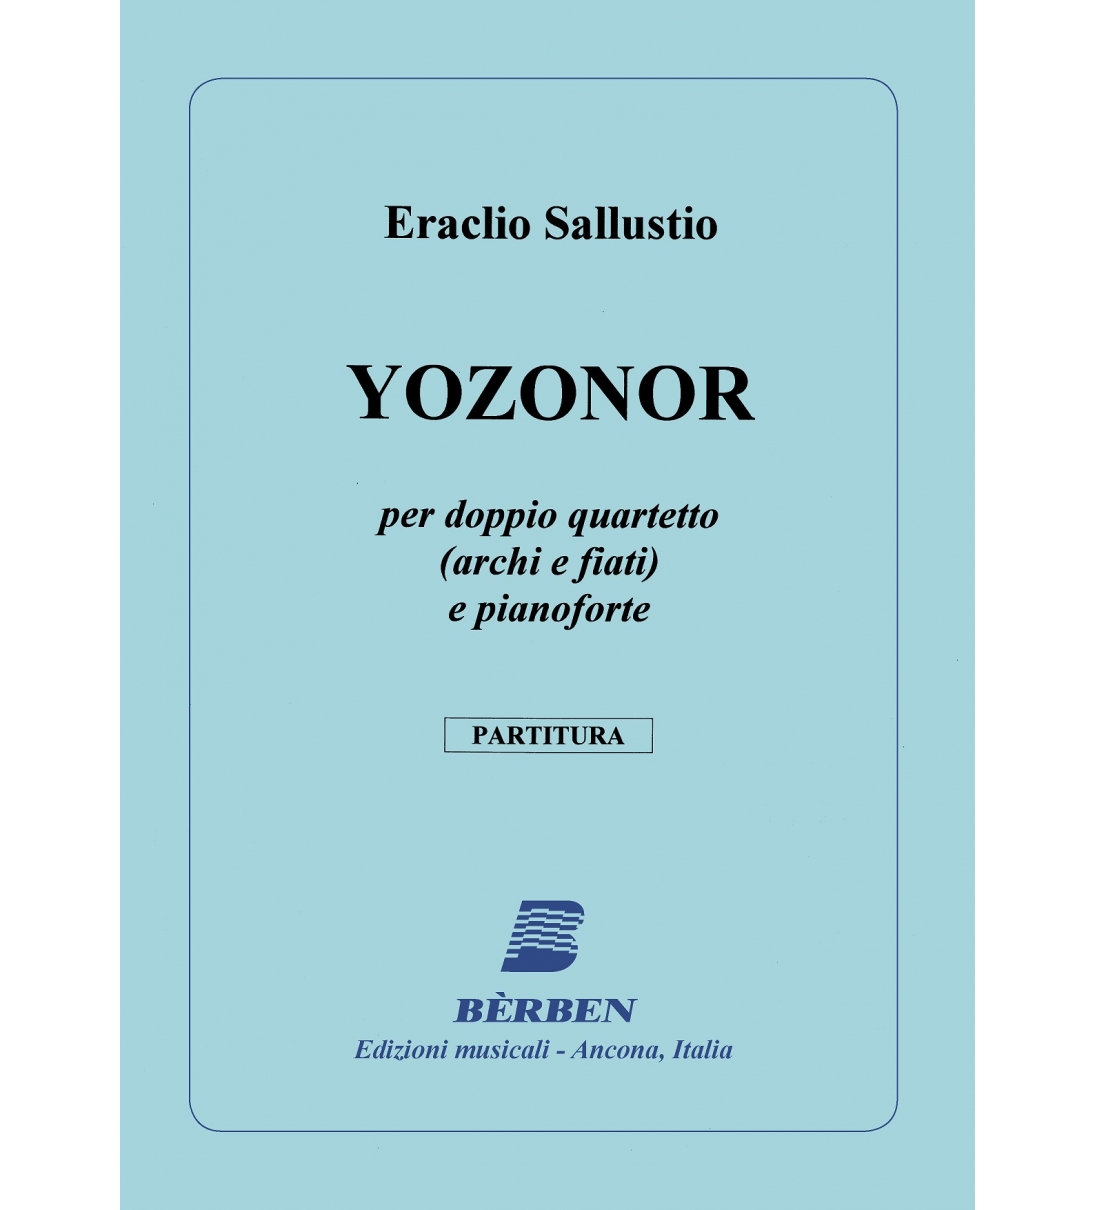 Yozonor per doppio quartetto (archi e fiati) e pianoforte